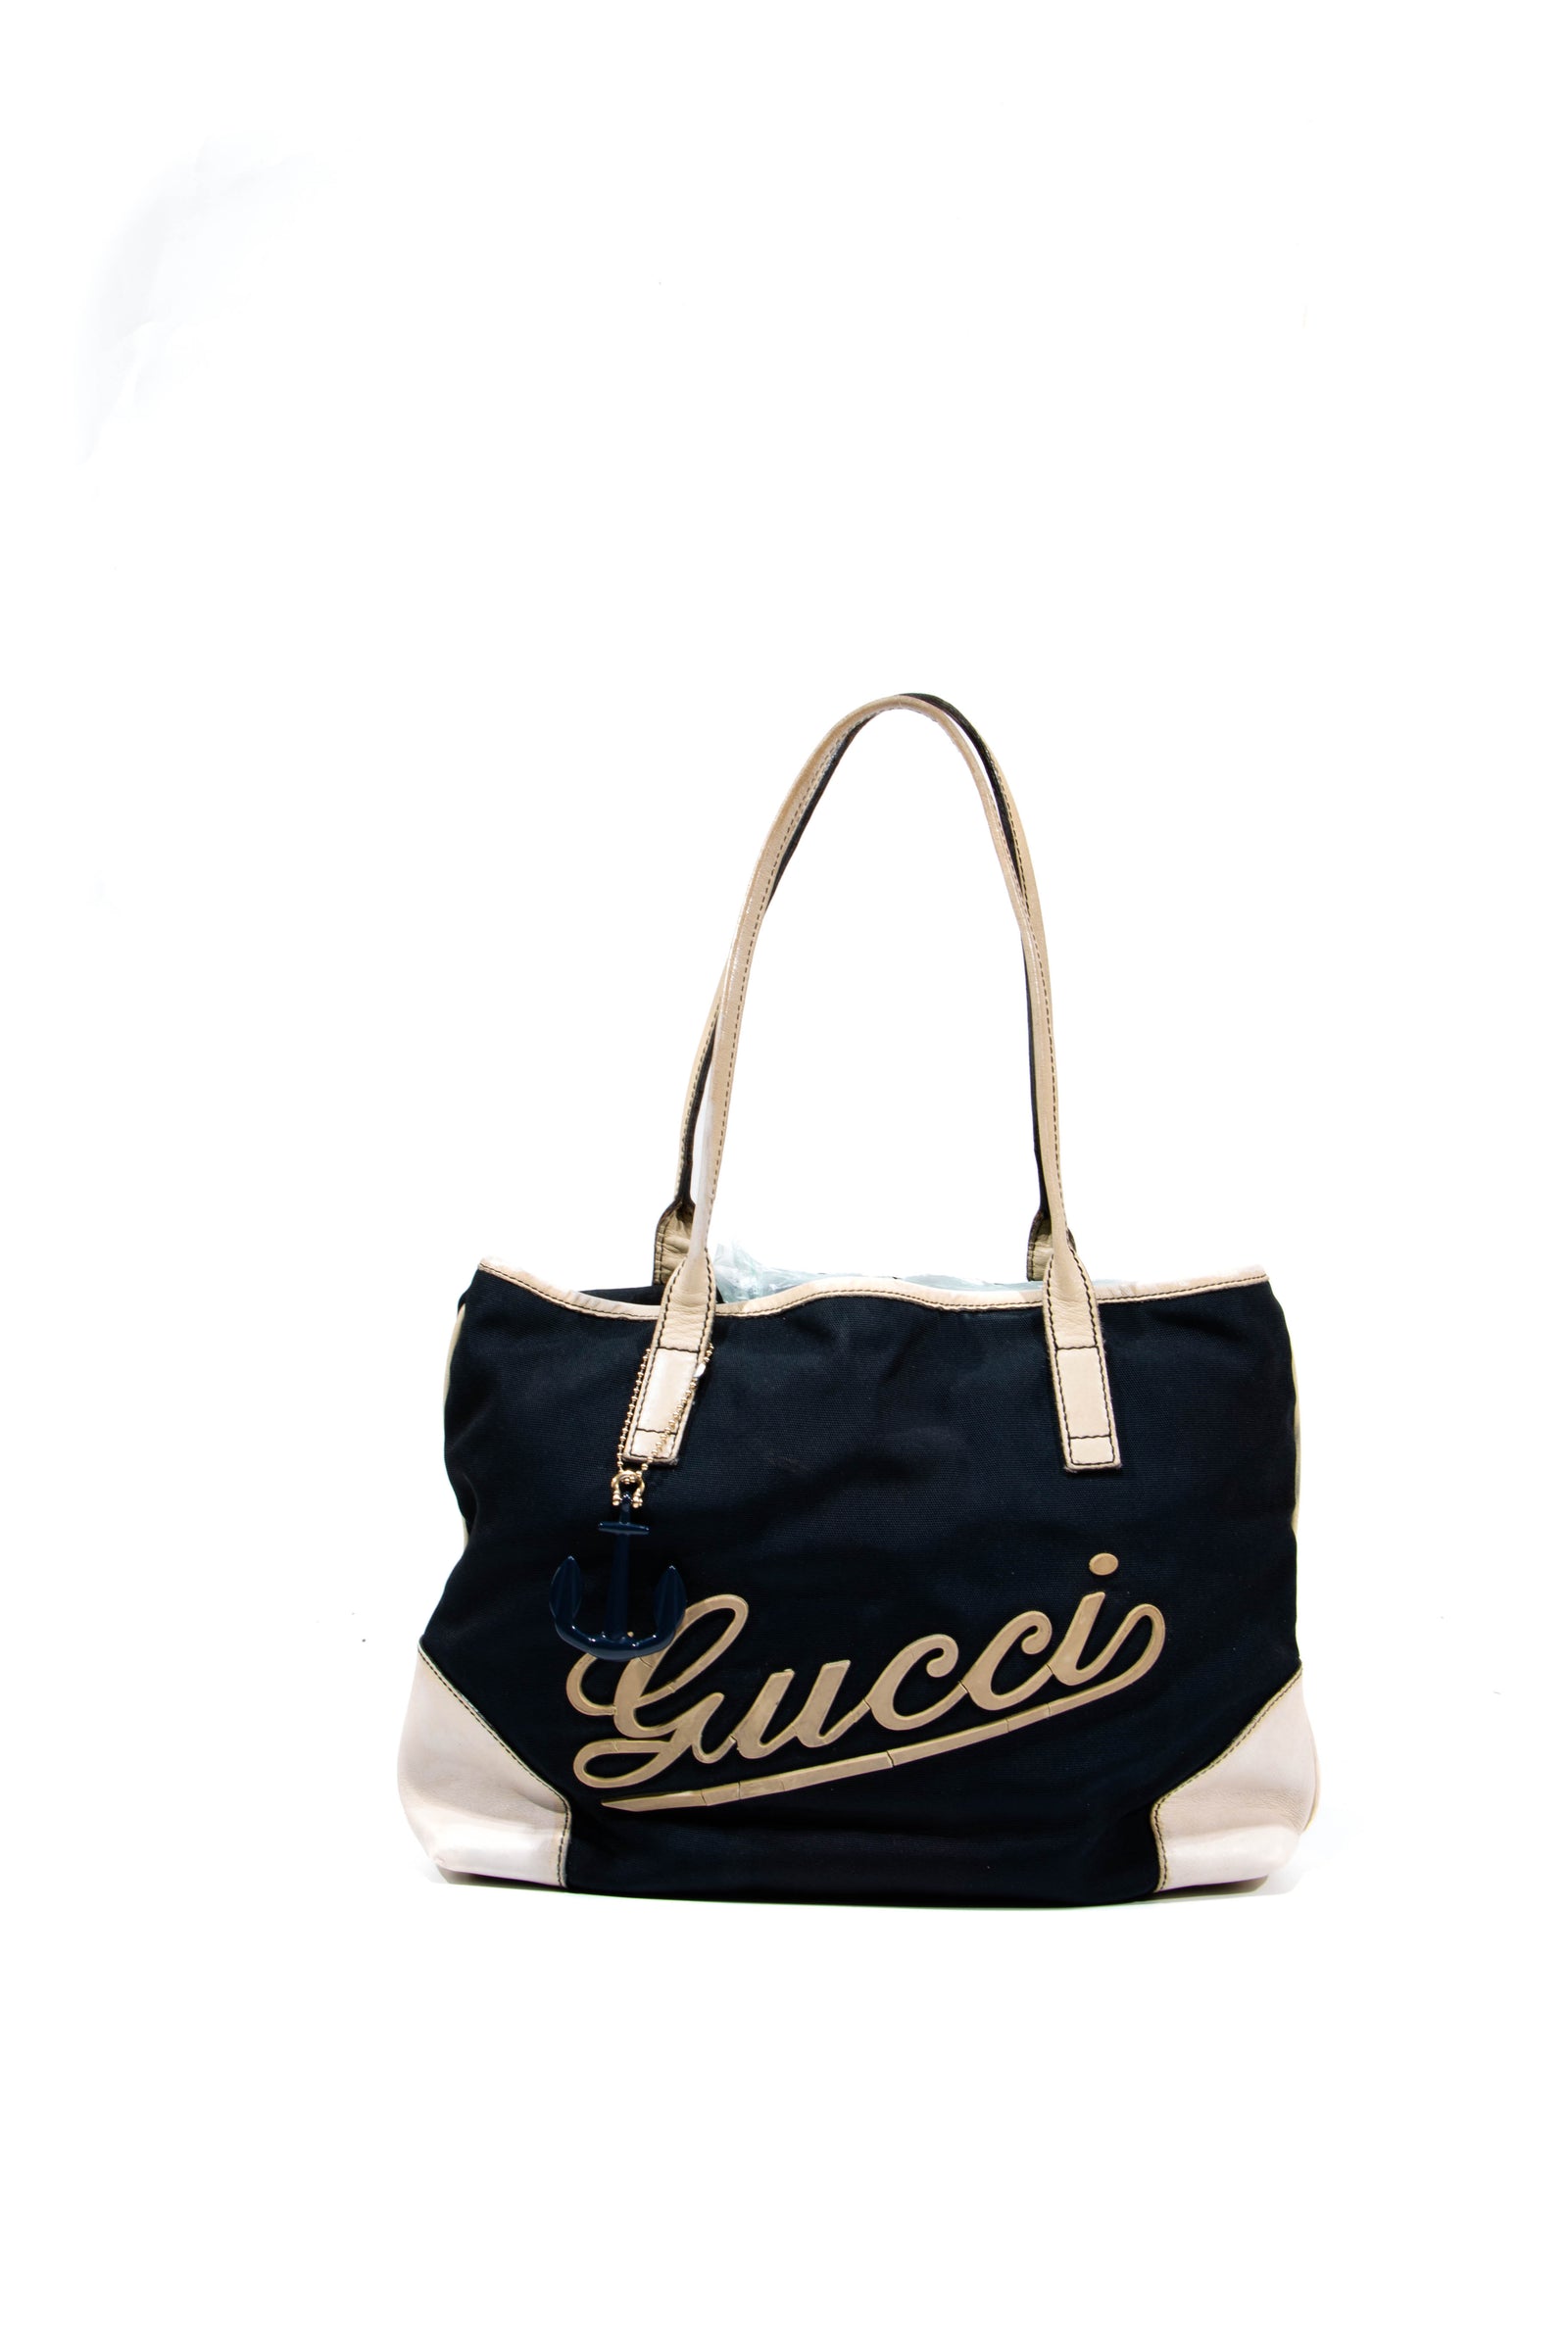 60s Authentic Vintage Bag Gucci/Pochette Gucci/Blue Bag leather/Rare Design Bag Gucci/Vintage 60s Gucci Bag